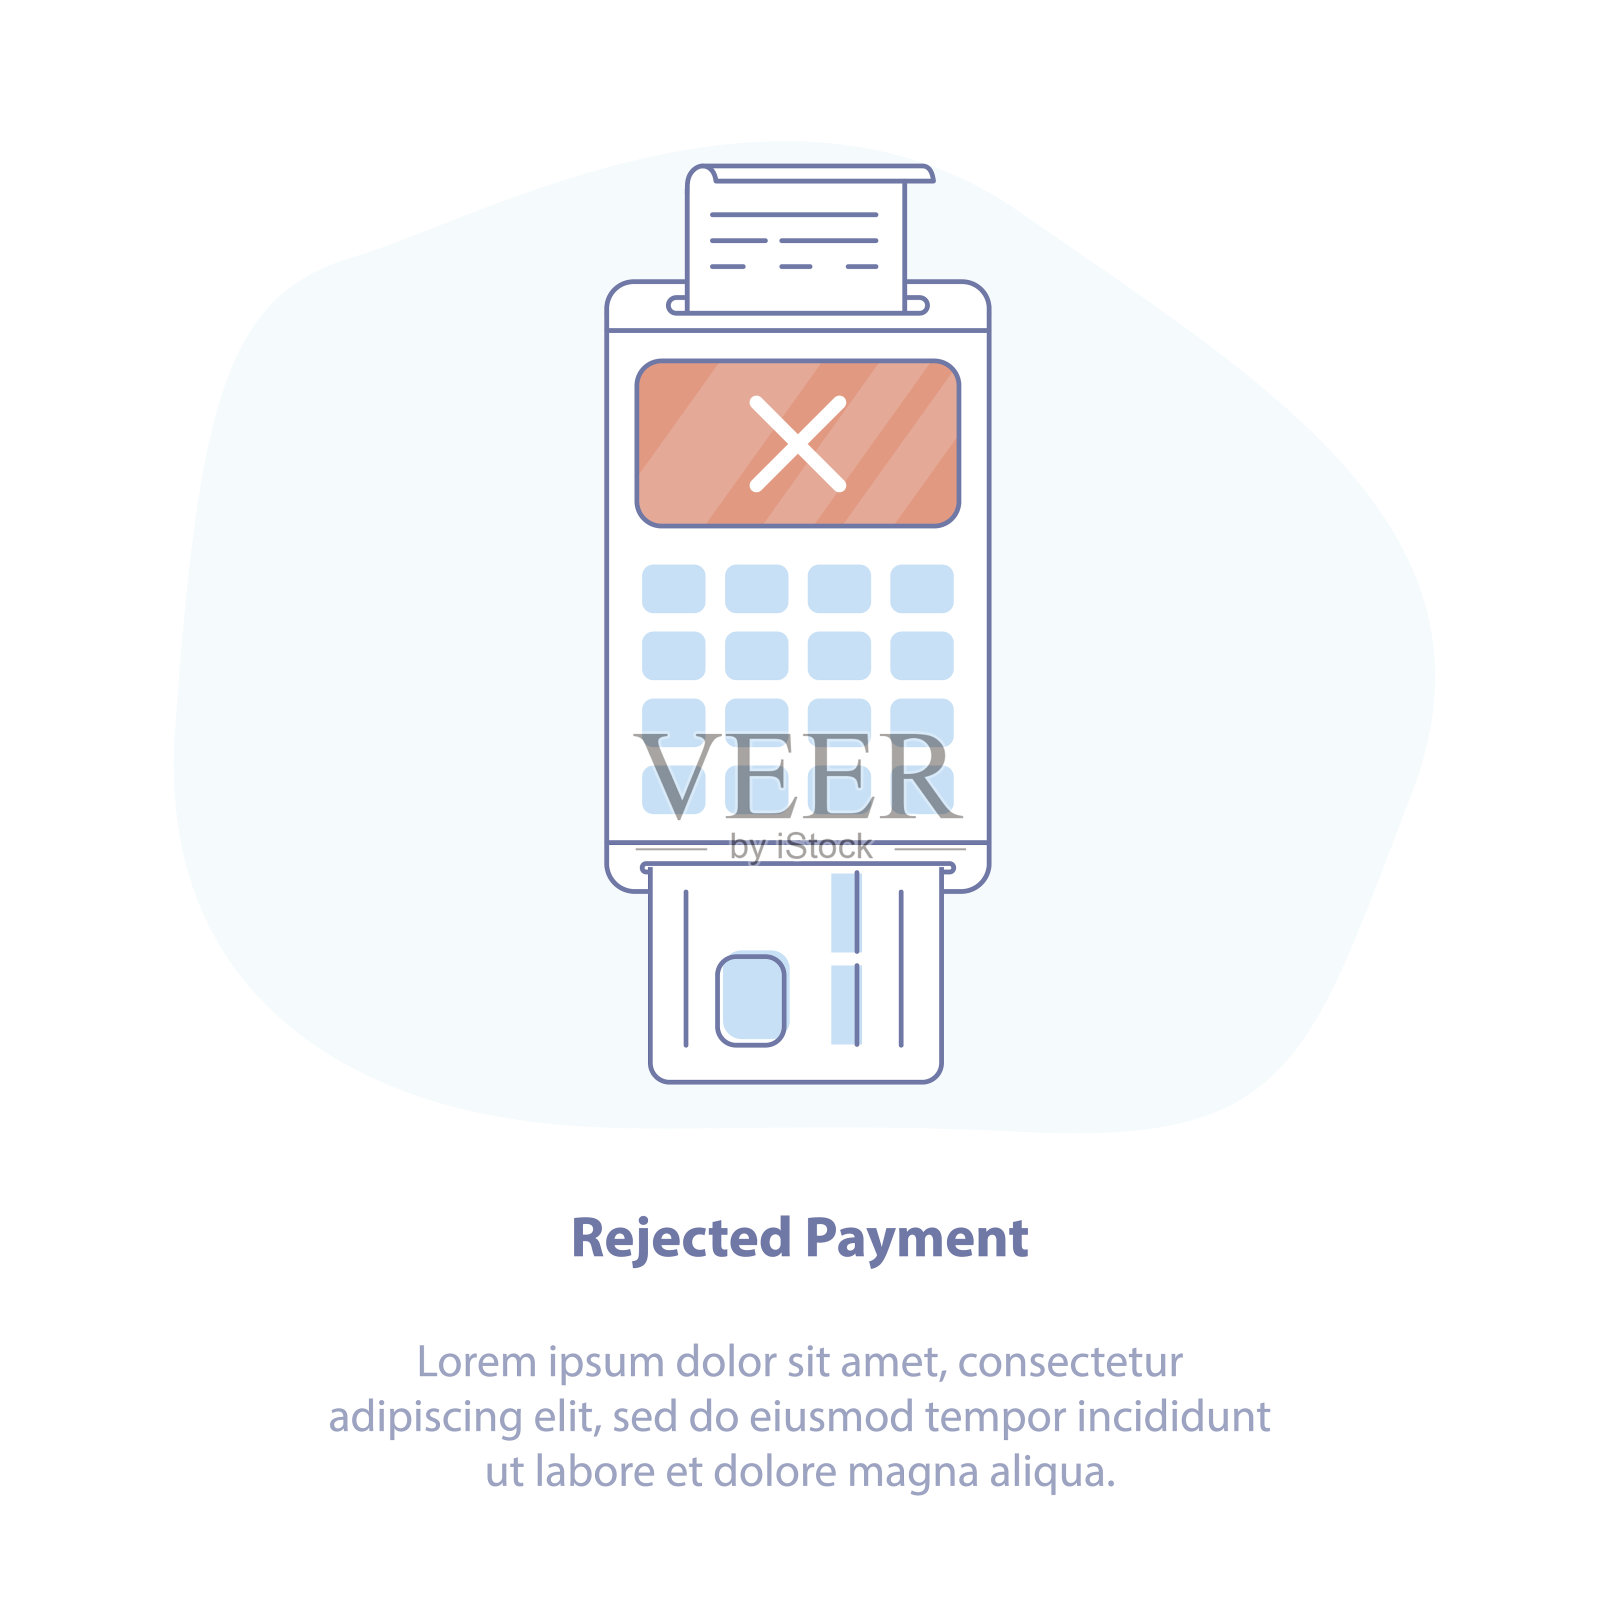 使用POS终端的信用卡支付不成功，拒付或支付失败-淡色孤立矢量图。插画图片素材